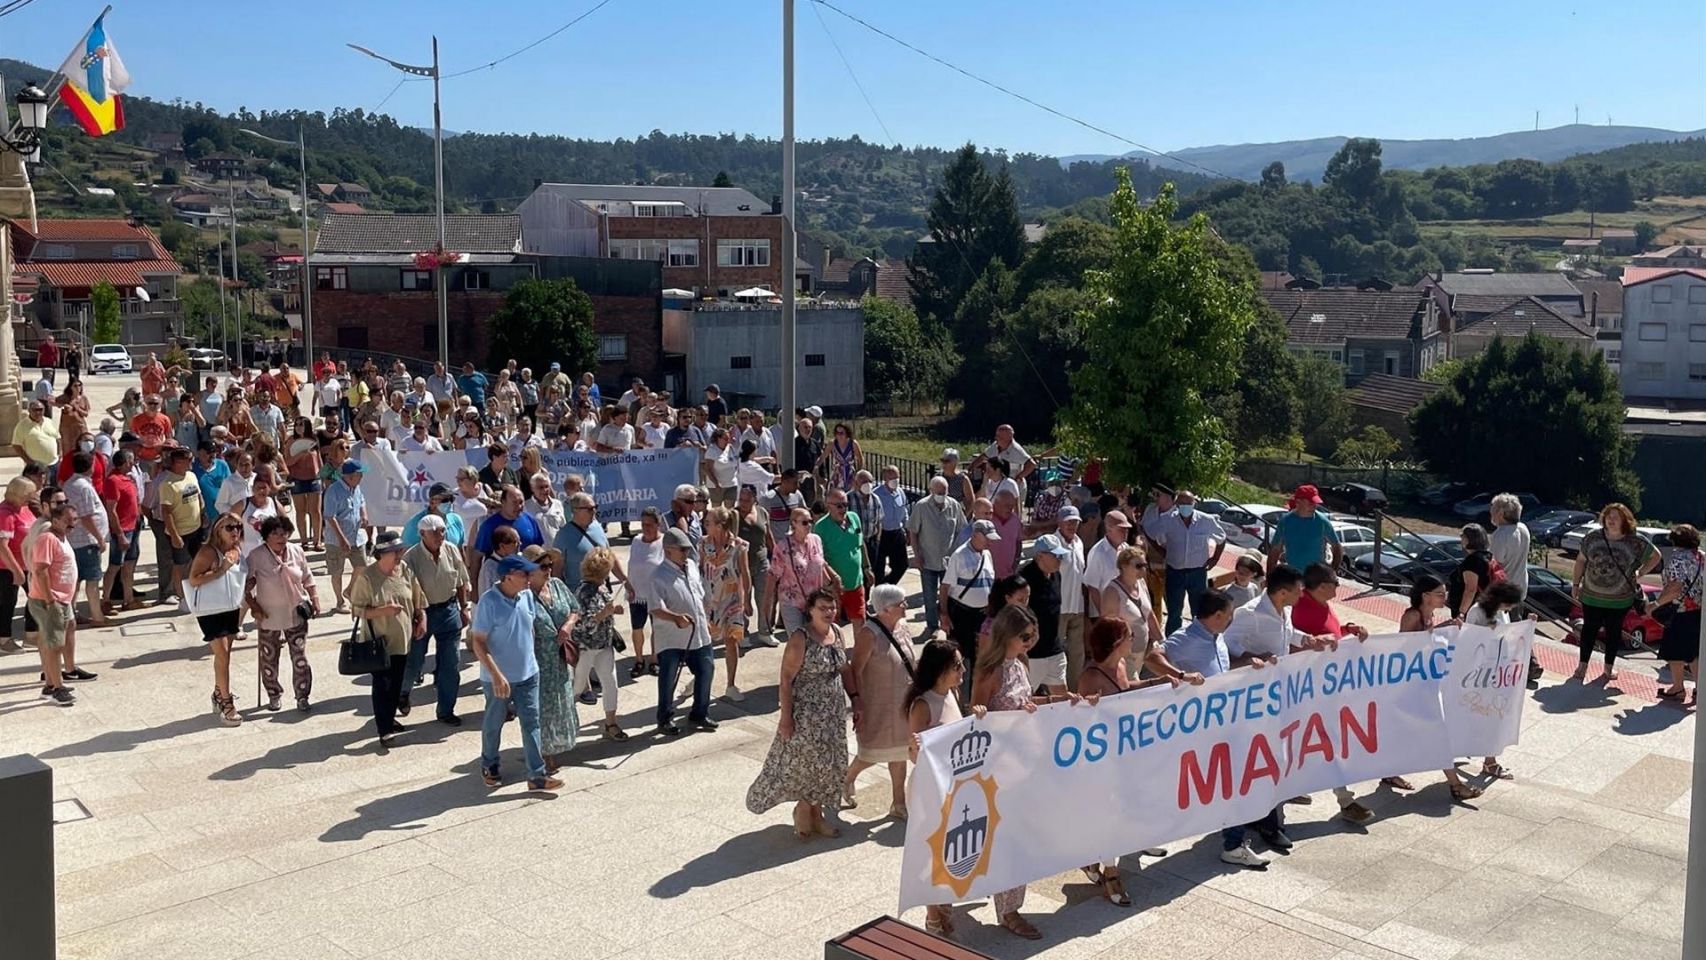 Más de un millar de personas se manifiestan en Ponte Caldelas (Pontevedra) por una "sanidad de calidad" en el municipio.